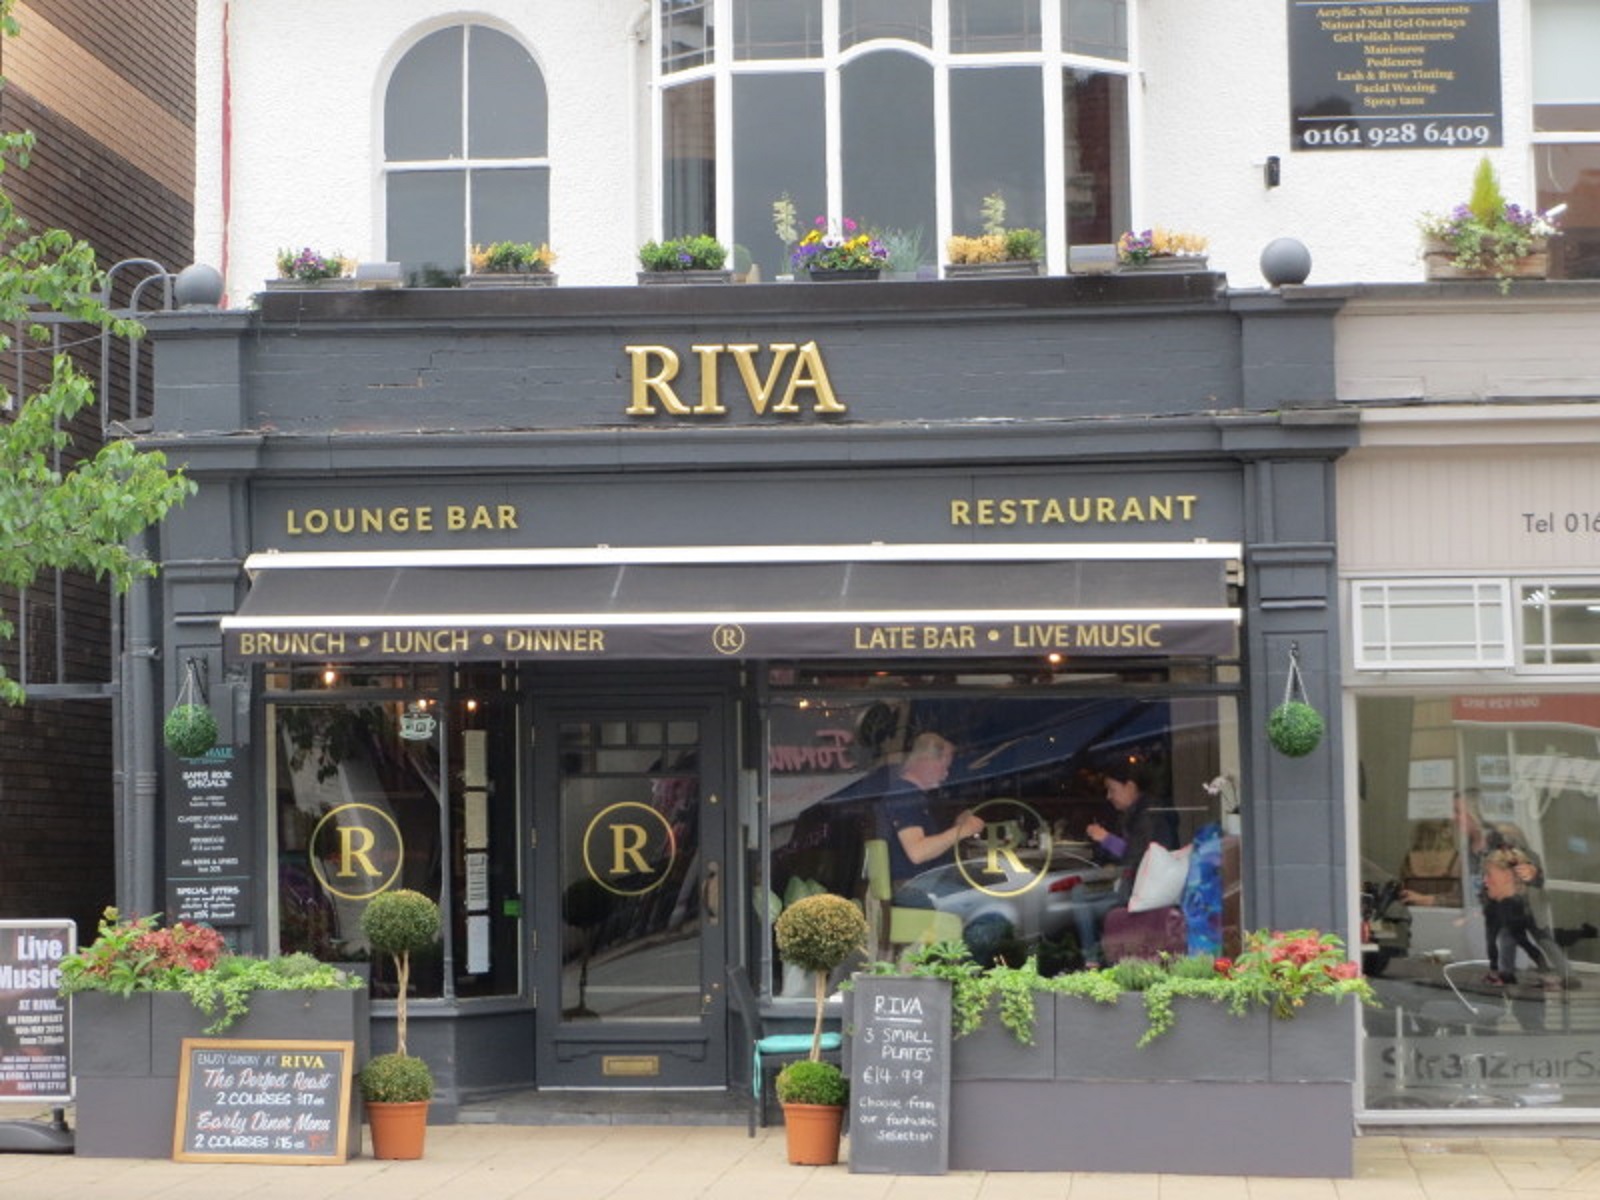 Riva restaurant in Hale Village, Cheshire